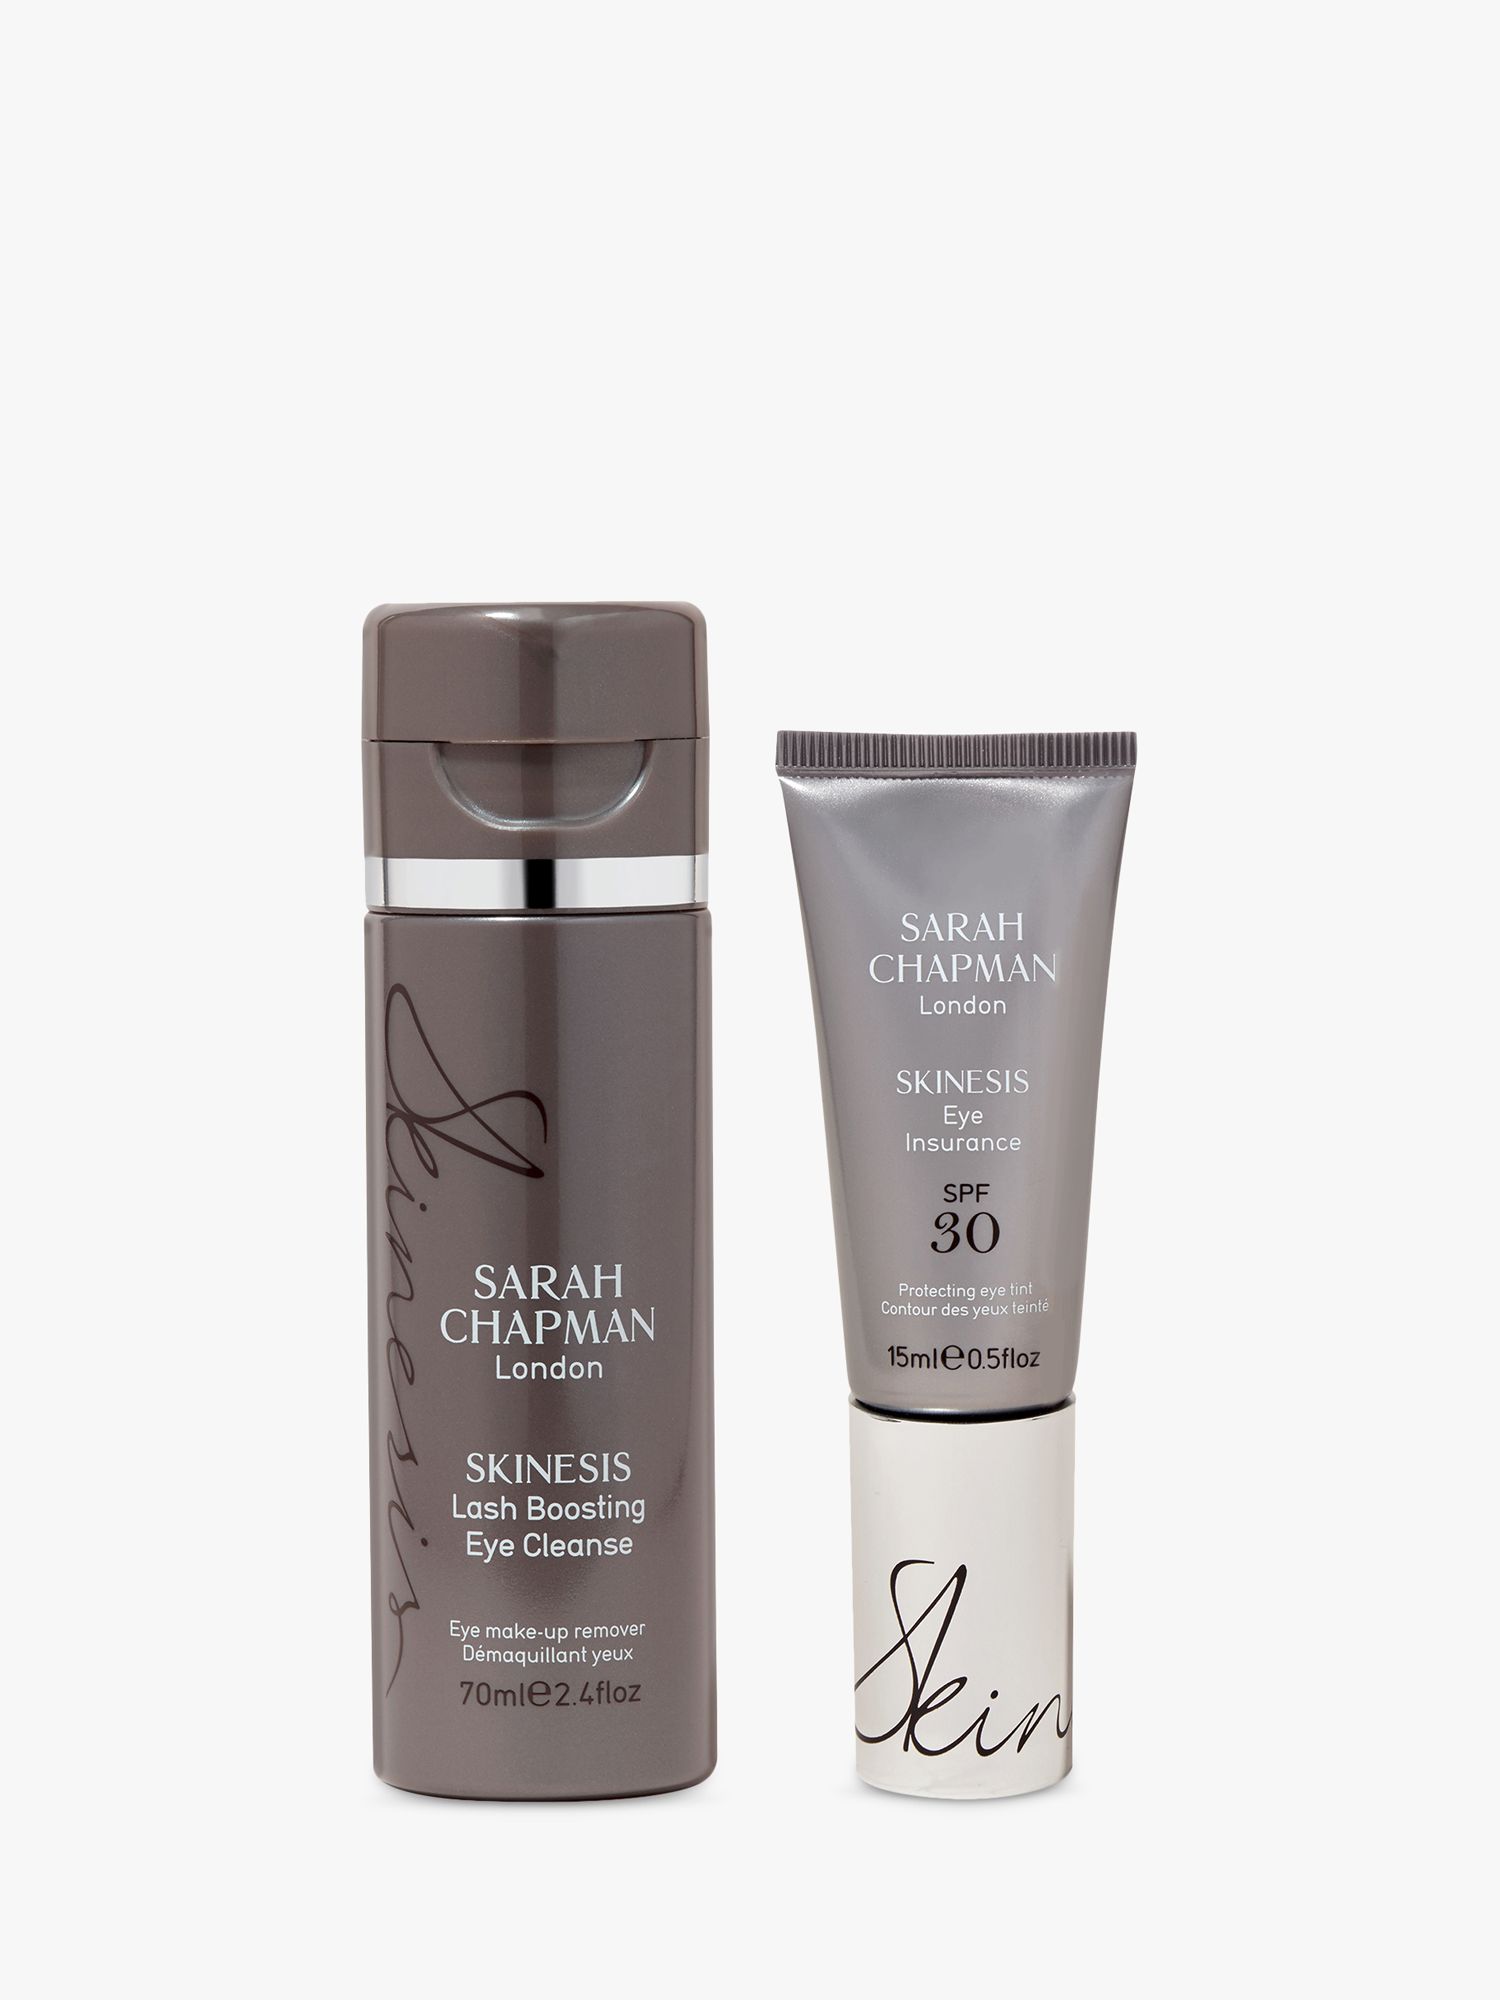 Sarah Chapman Eye Revival Duo Skincare Gift Set